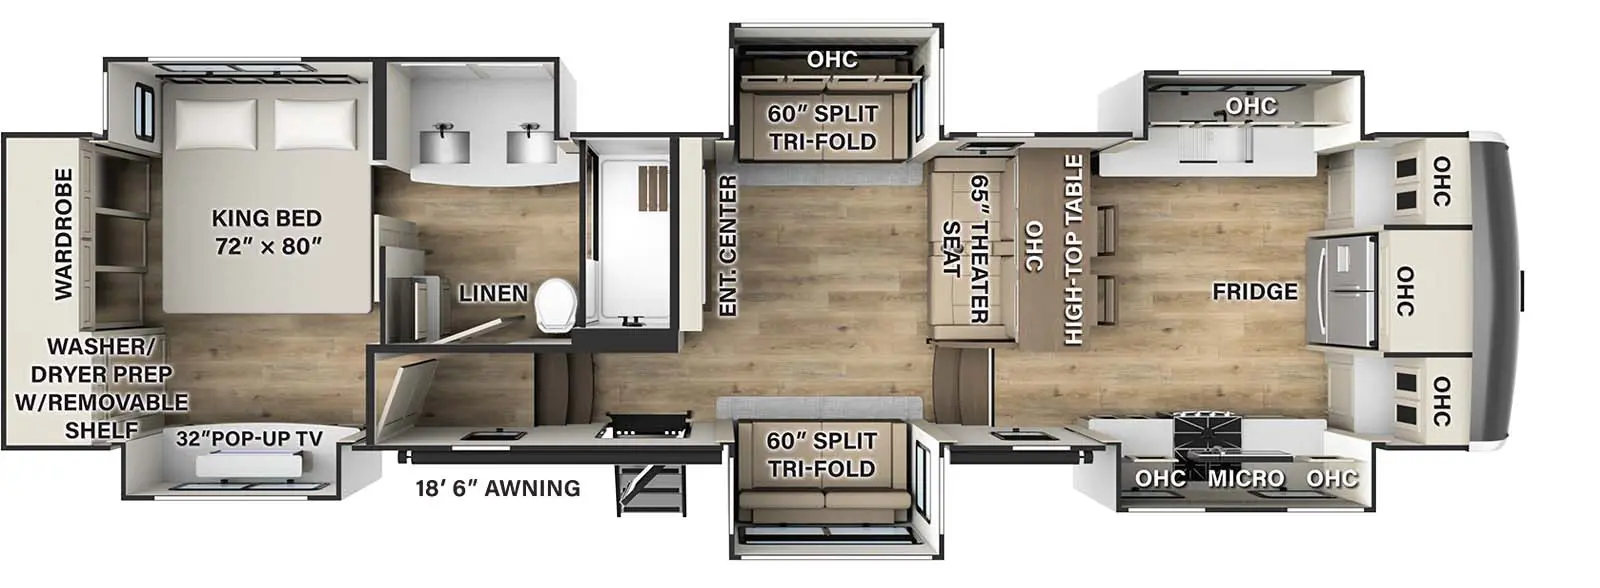 388FK Floorplan Image